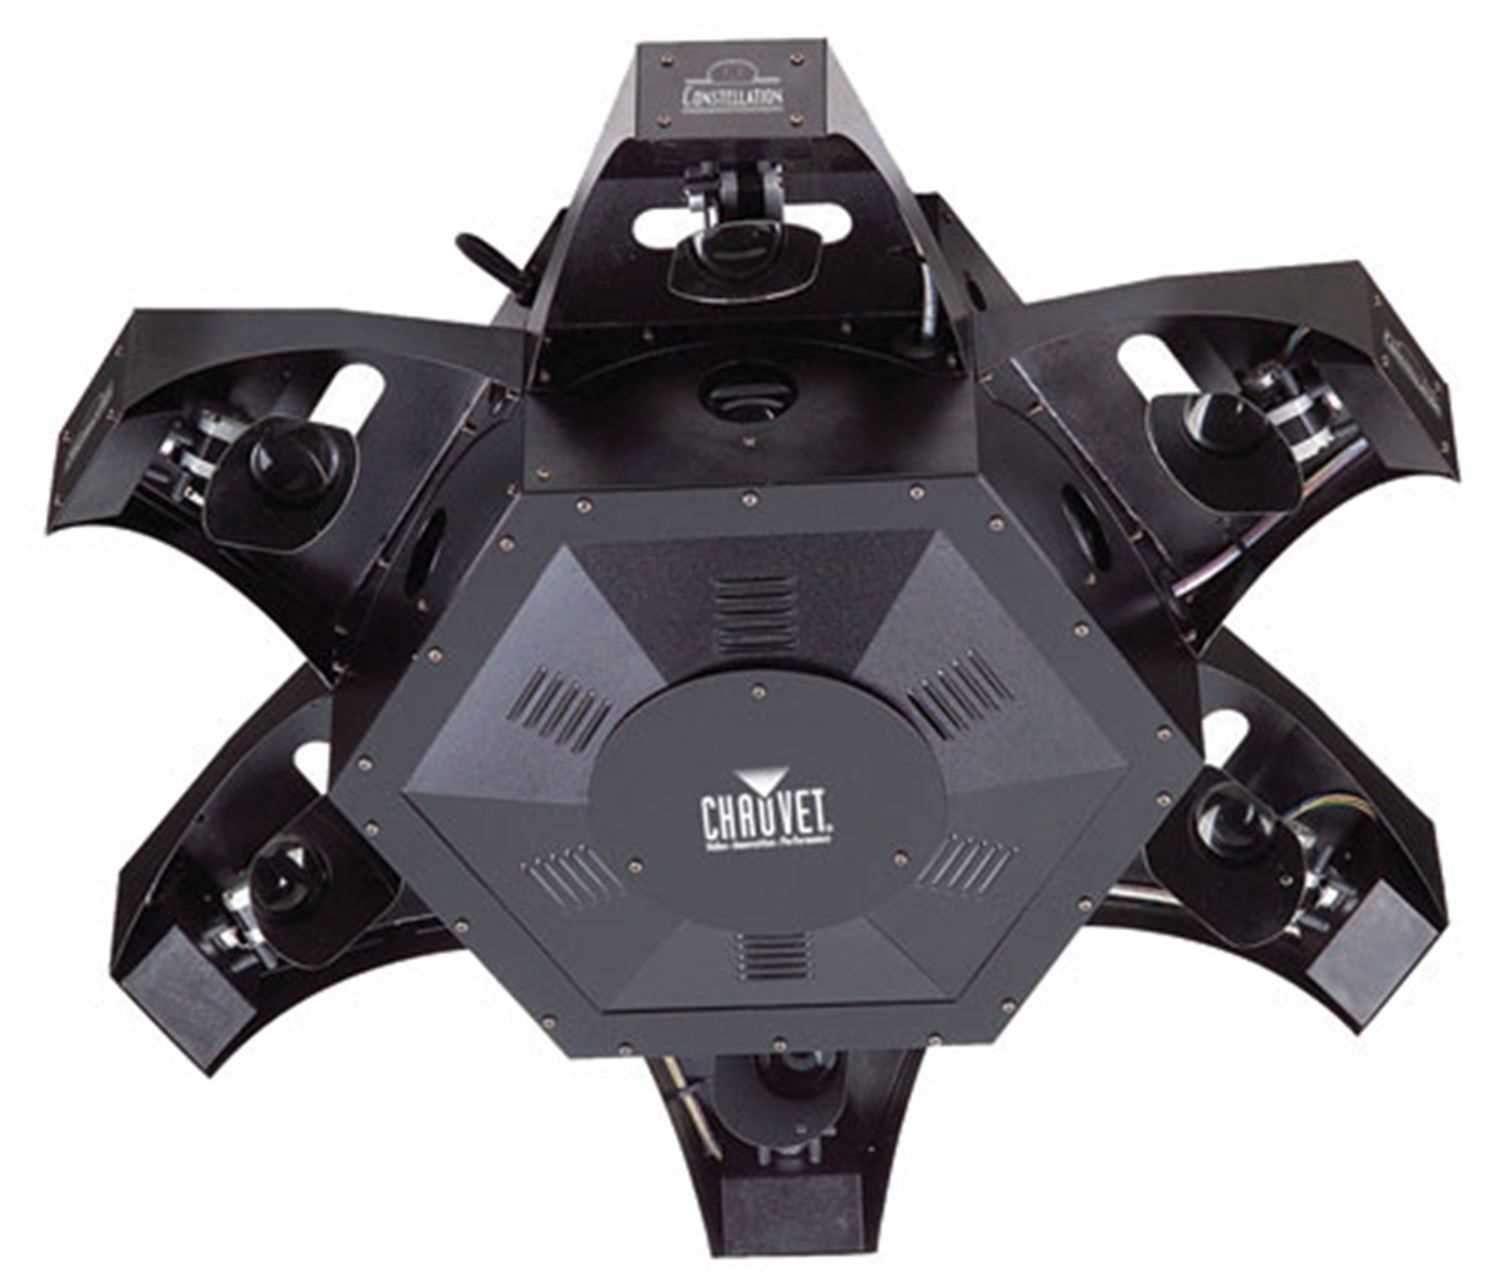 Chauvet DMX-800 Constellation Center Piece Hmi-5 - ProSound and Stage Lighting